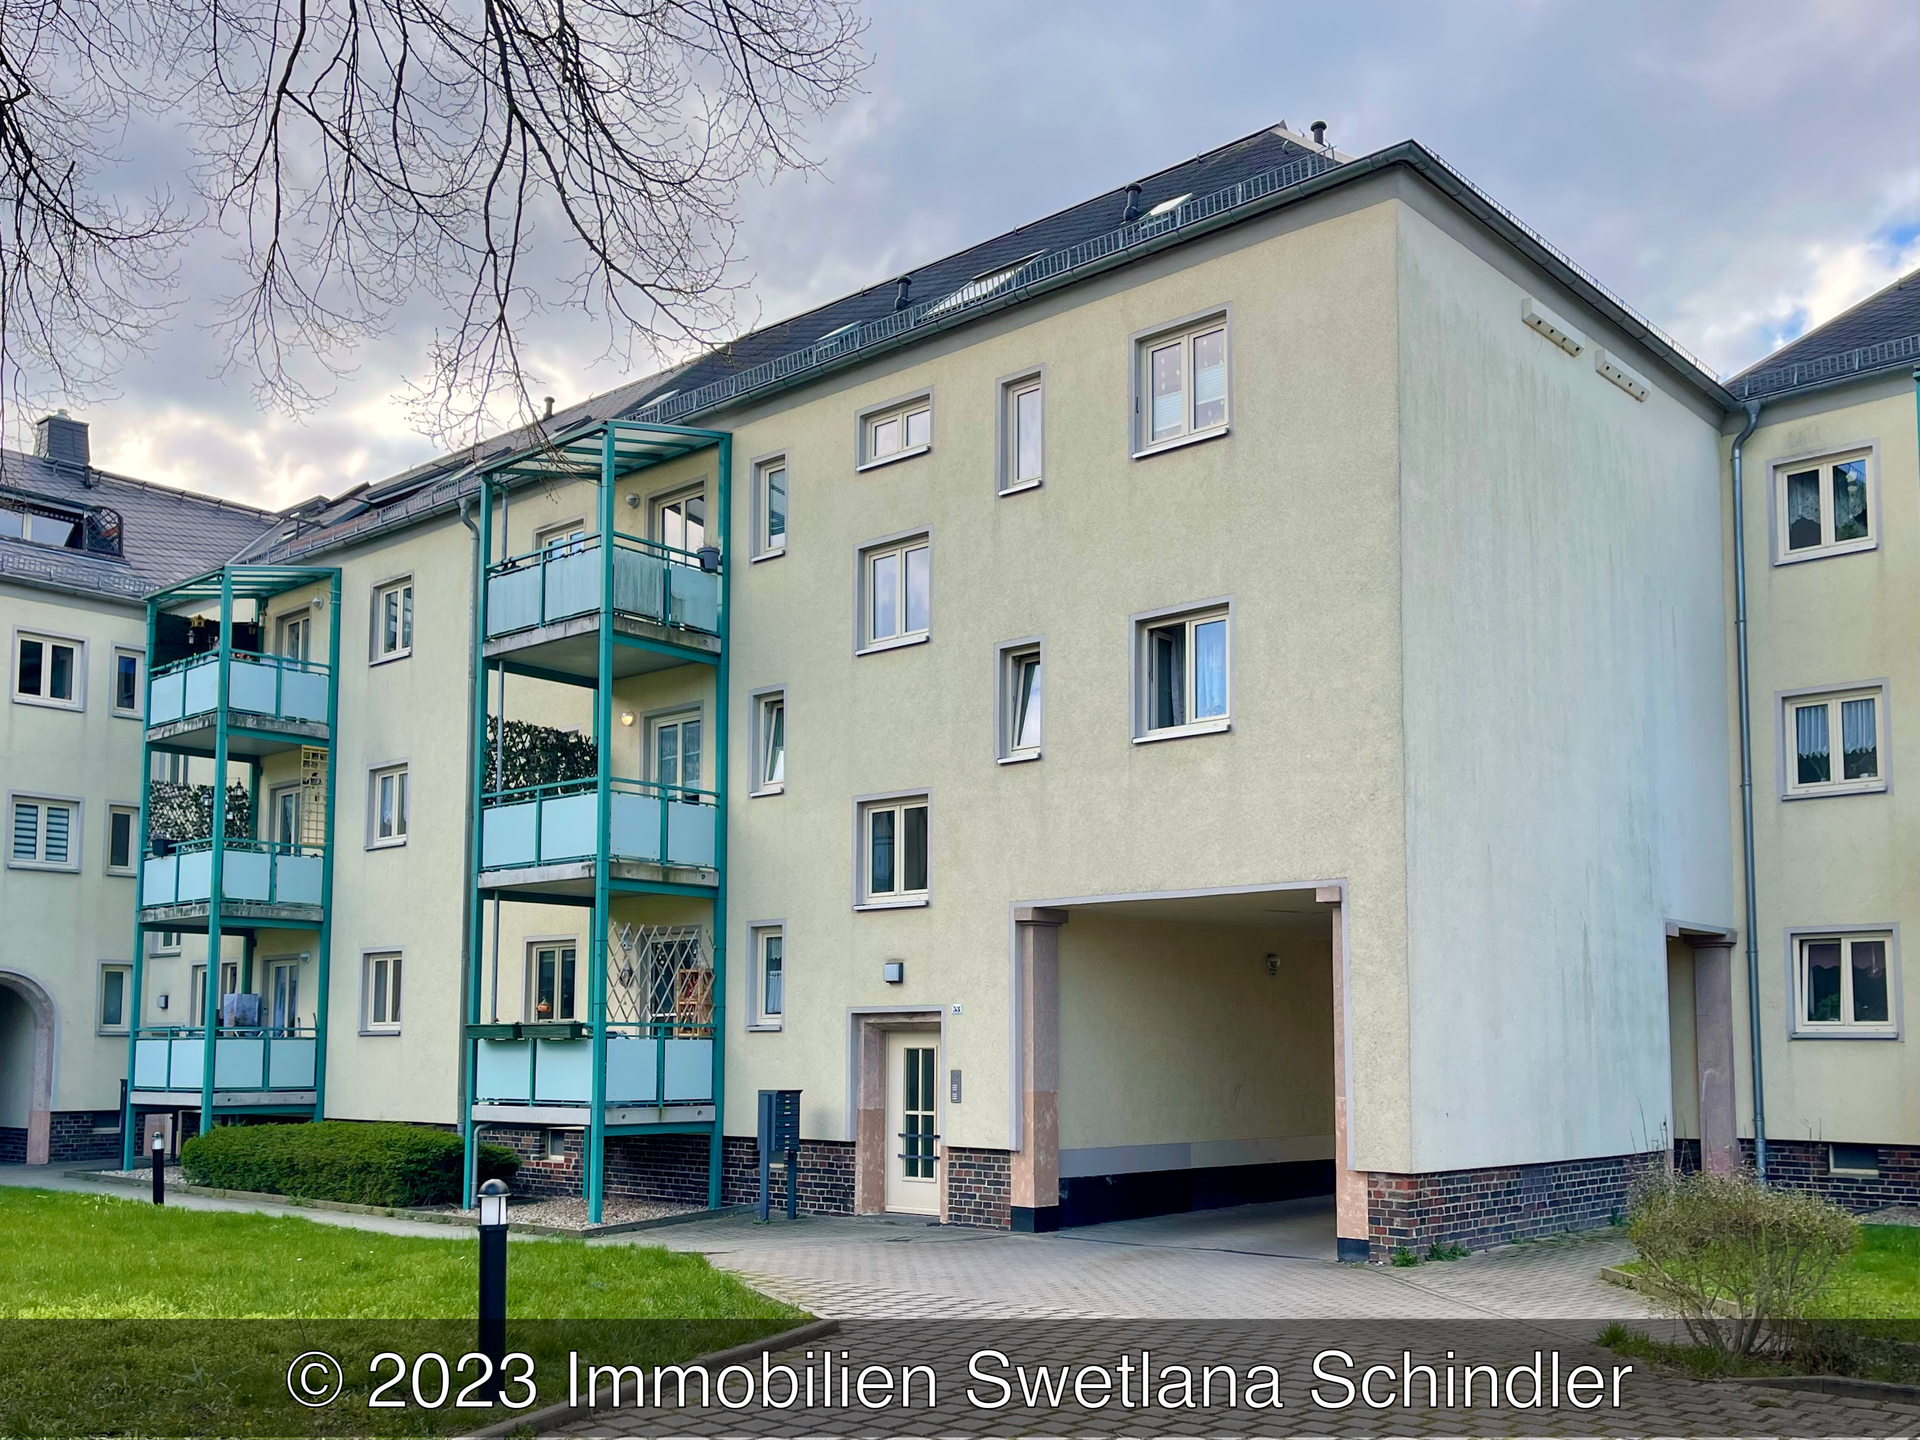 Einfamilienhaus, 09117 Chemnitz, Reichenbrandt, Immobilien Swetlana Schindler,